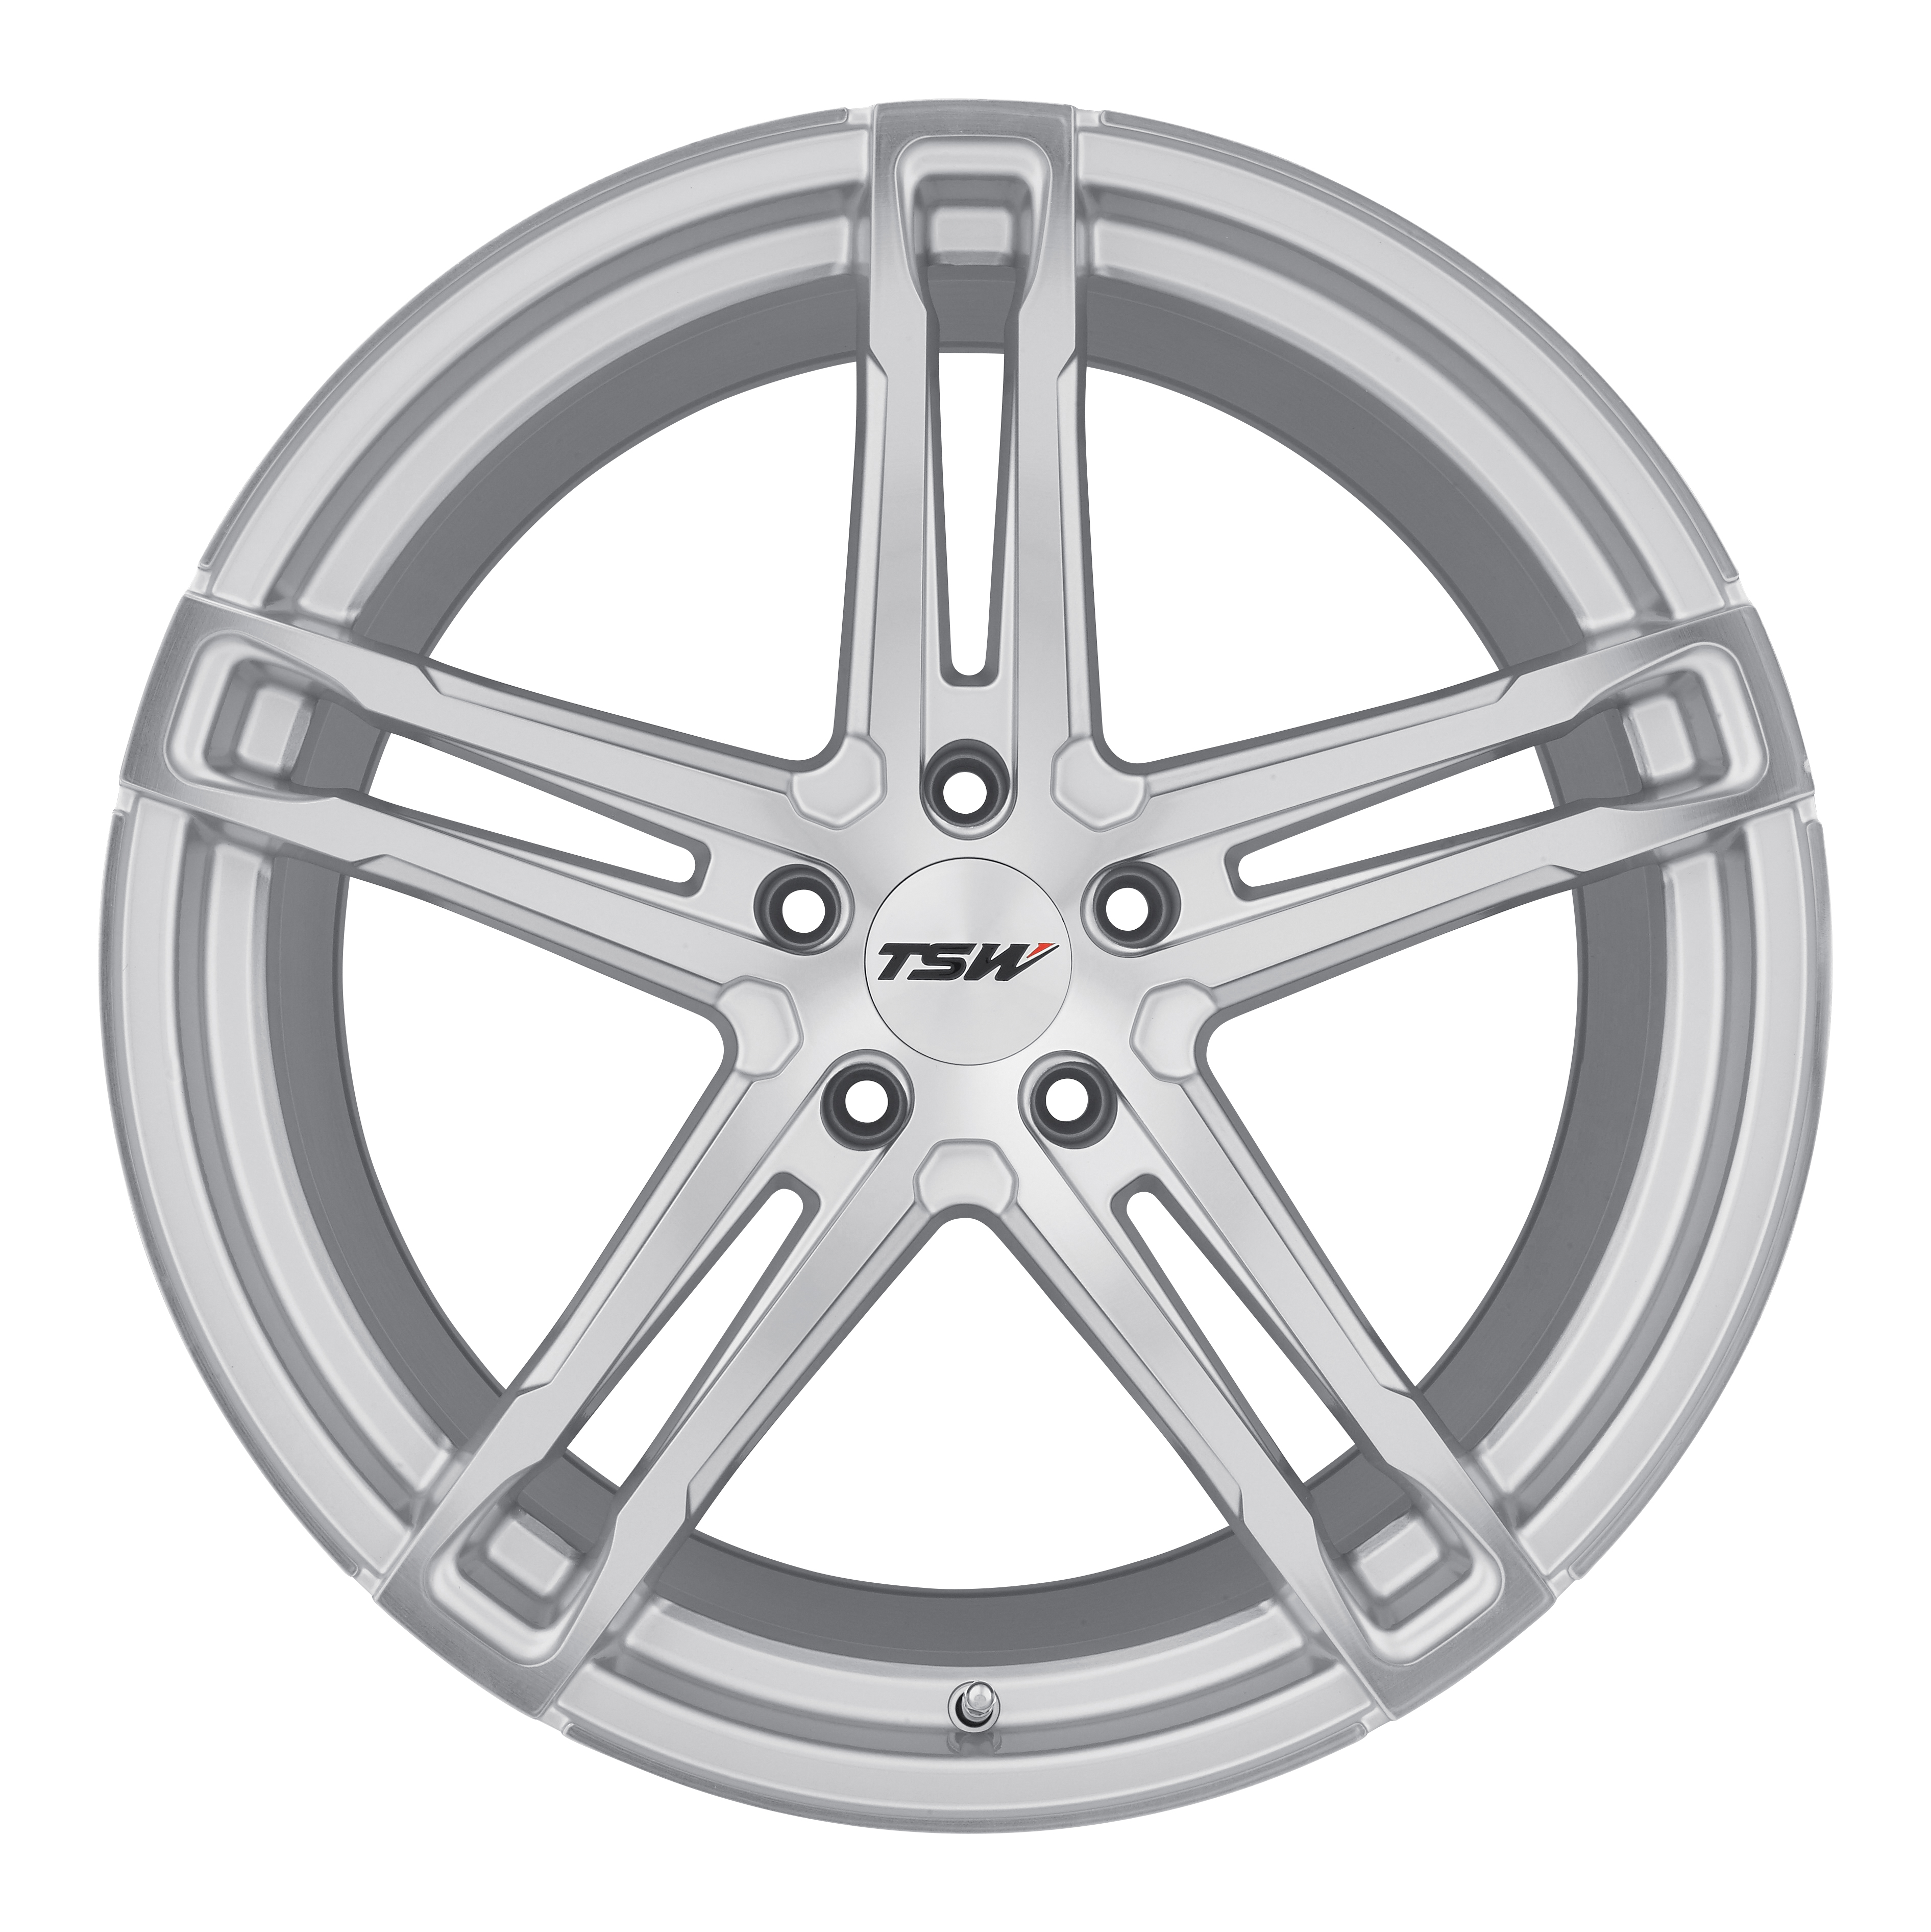 TSW Alloy Wheels- Mechanica in Silver Mirror Cut